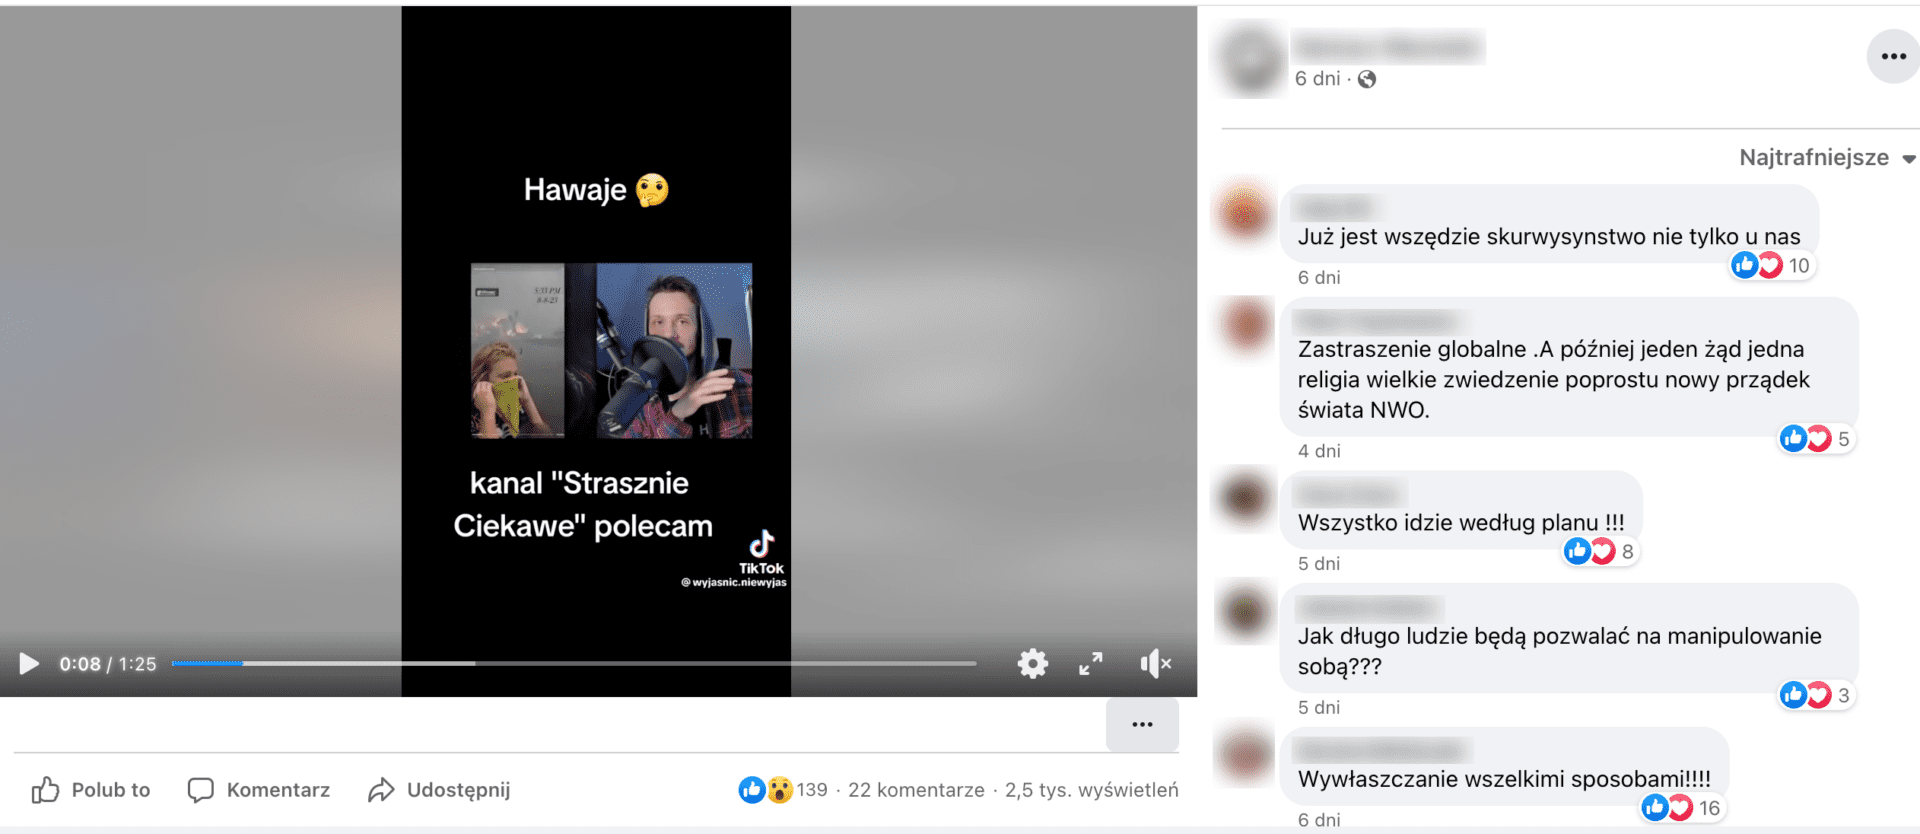 Zrzut ekranu posta na Facebooku. W kadrze widzimy młodego mężczyznę w kapturze przed mikrofonem. Po lewej stronie wklejono inny kadr, w którym kobieta nakłada sobie na twarz zieloną chustę.